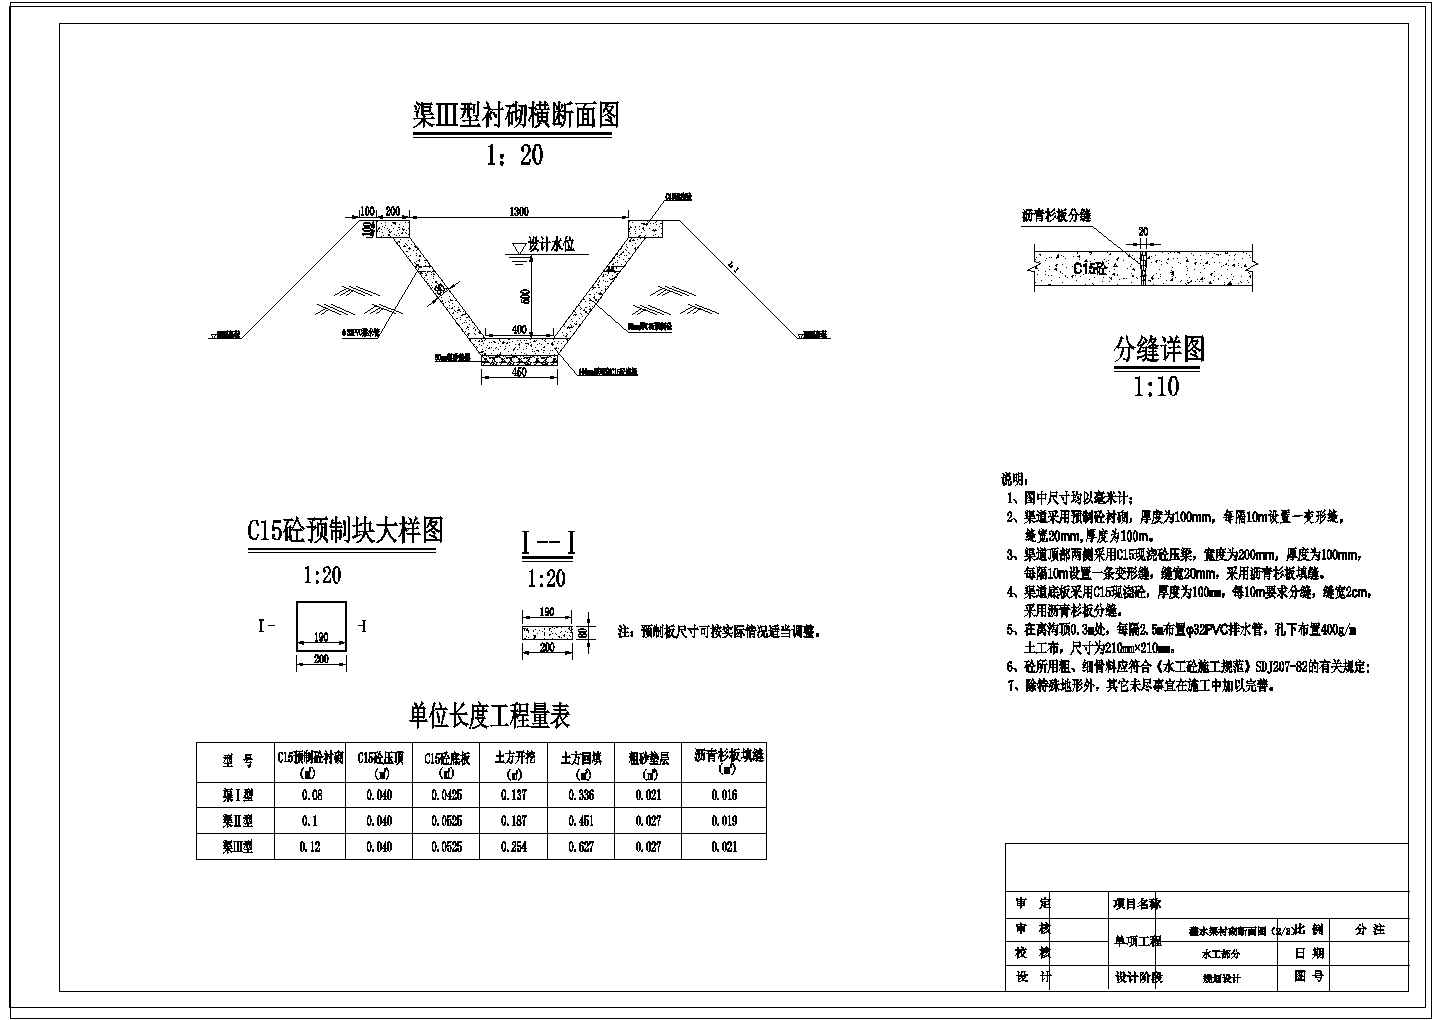 【江西】农村土地综合整治工程初步设计施工图122张